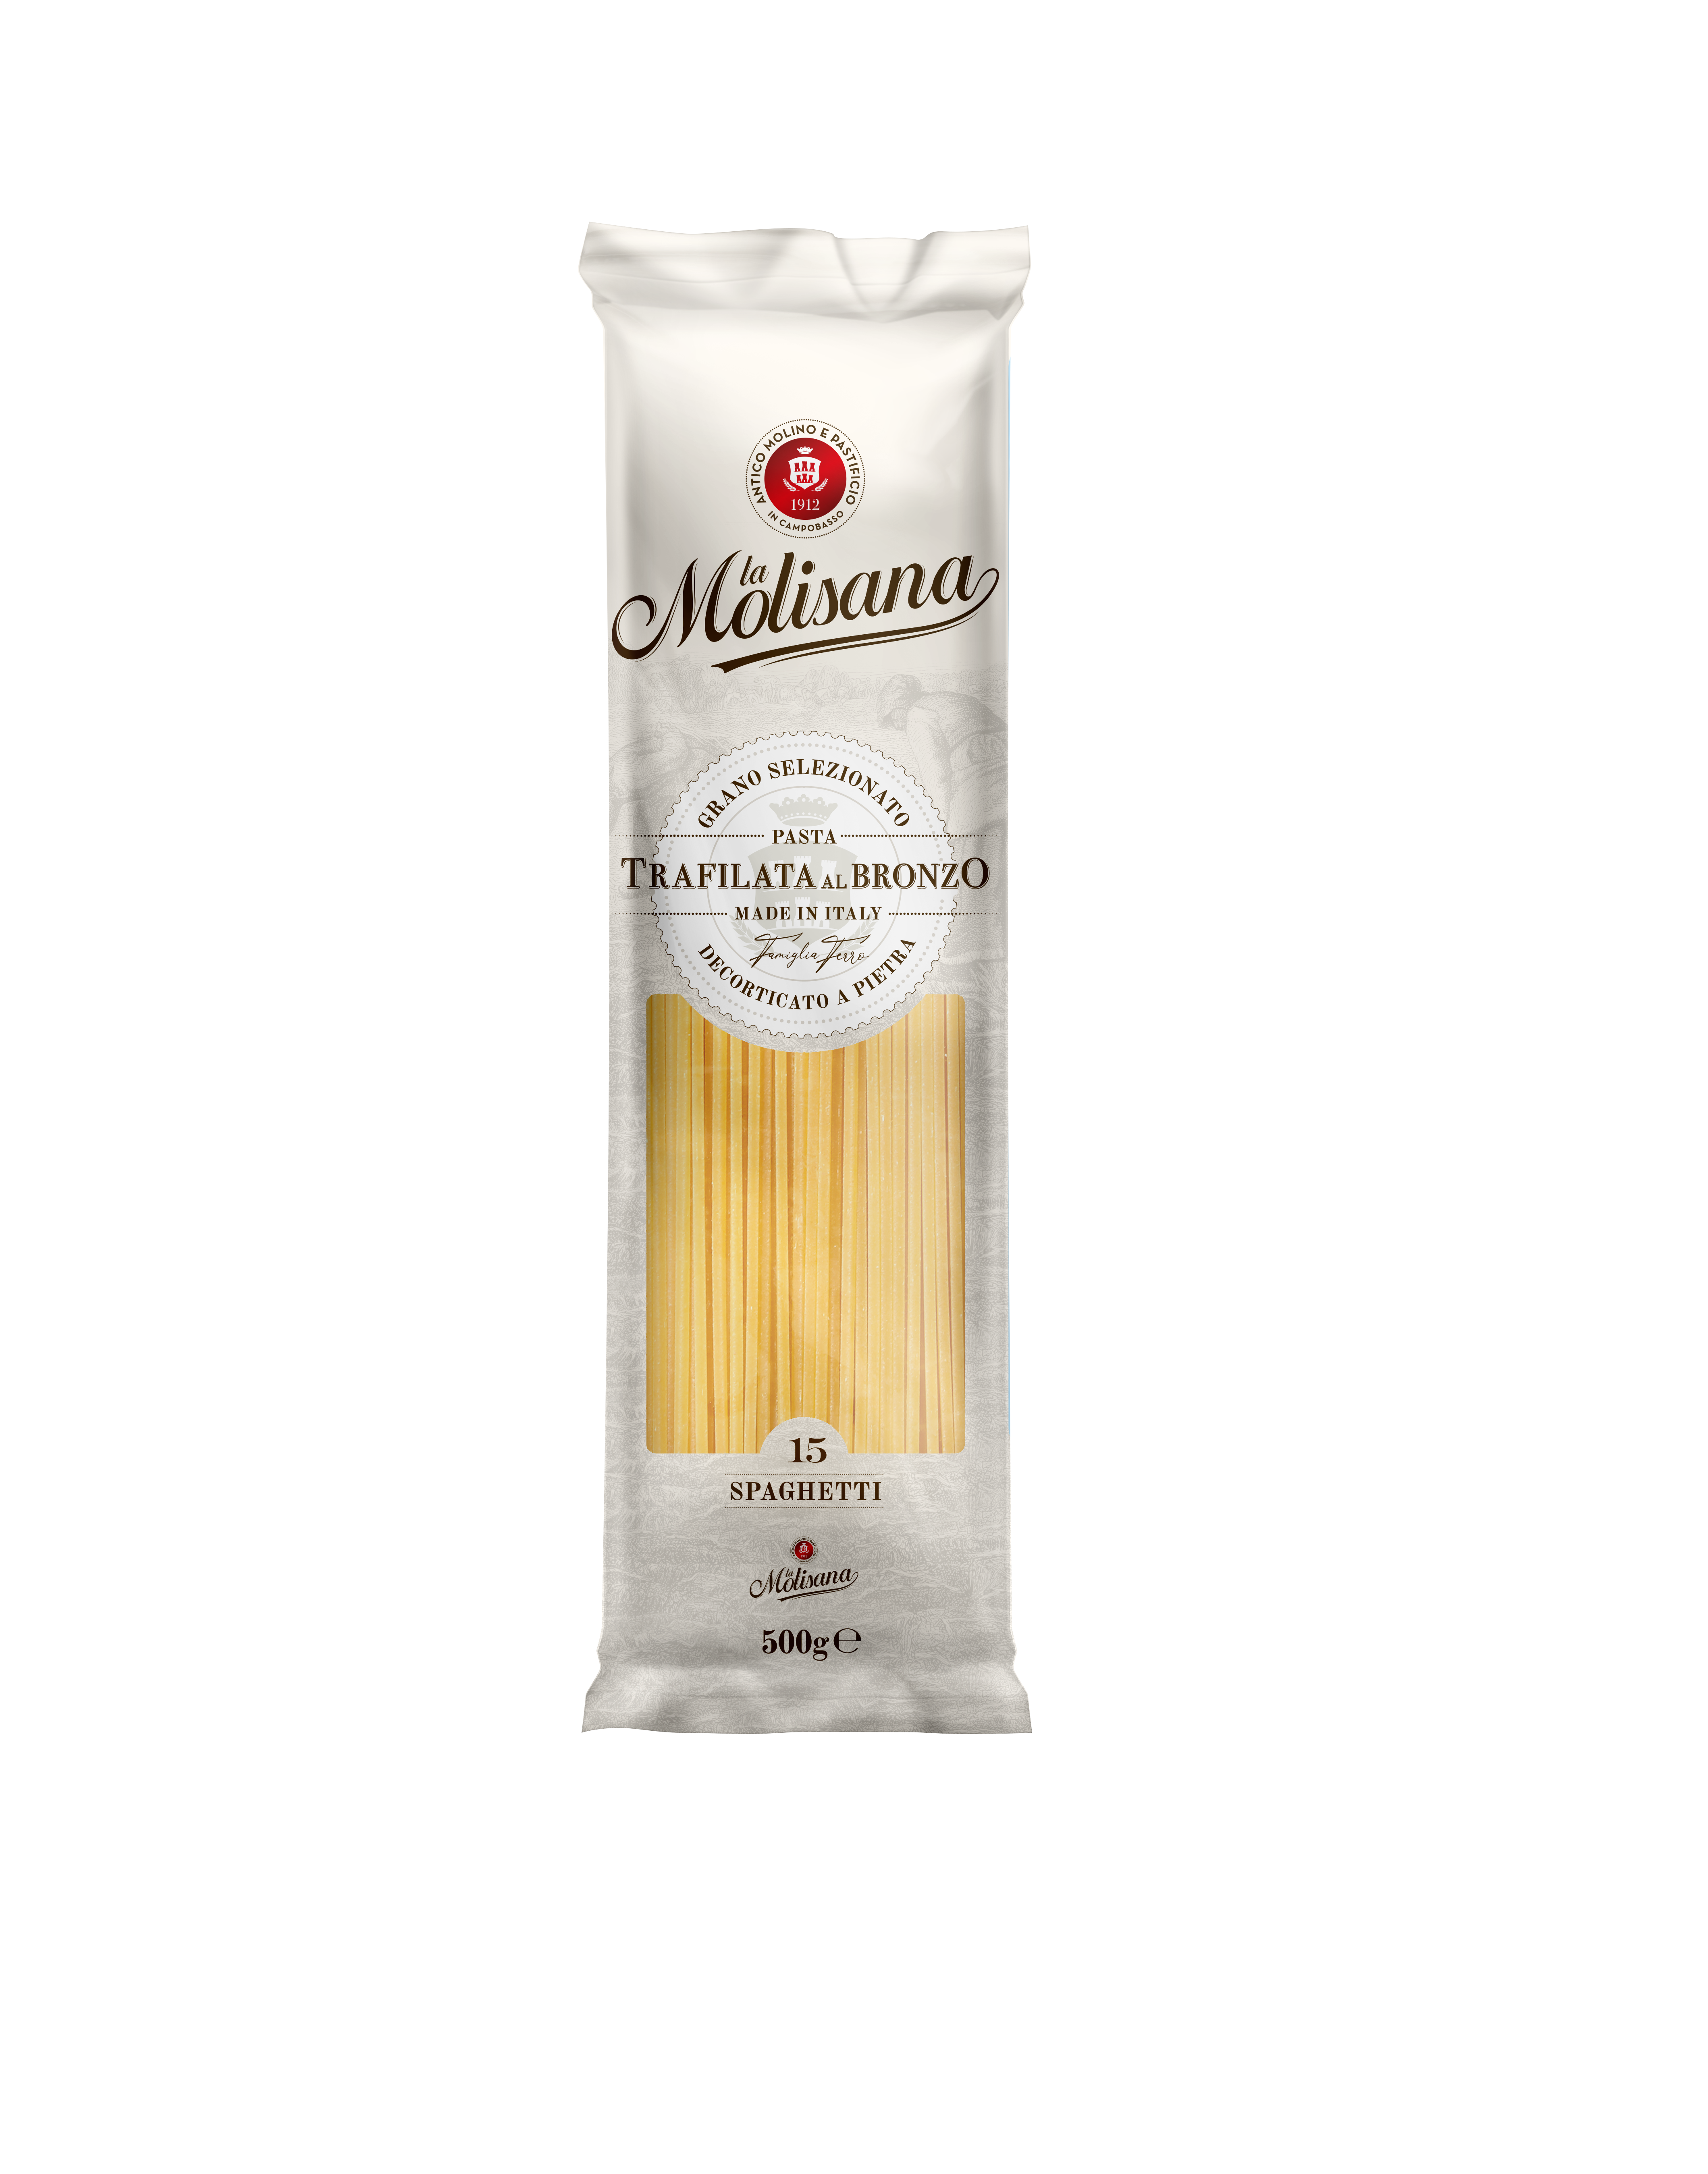 La Molisana意大利粉Spaghetti #15